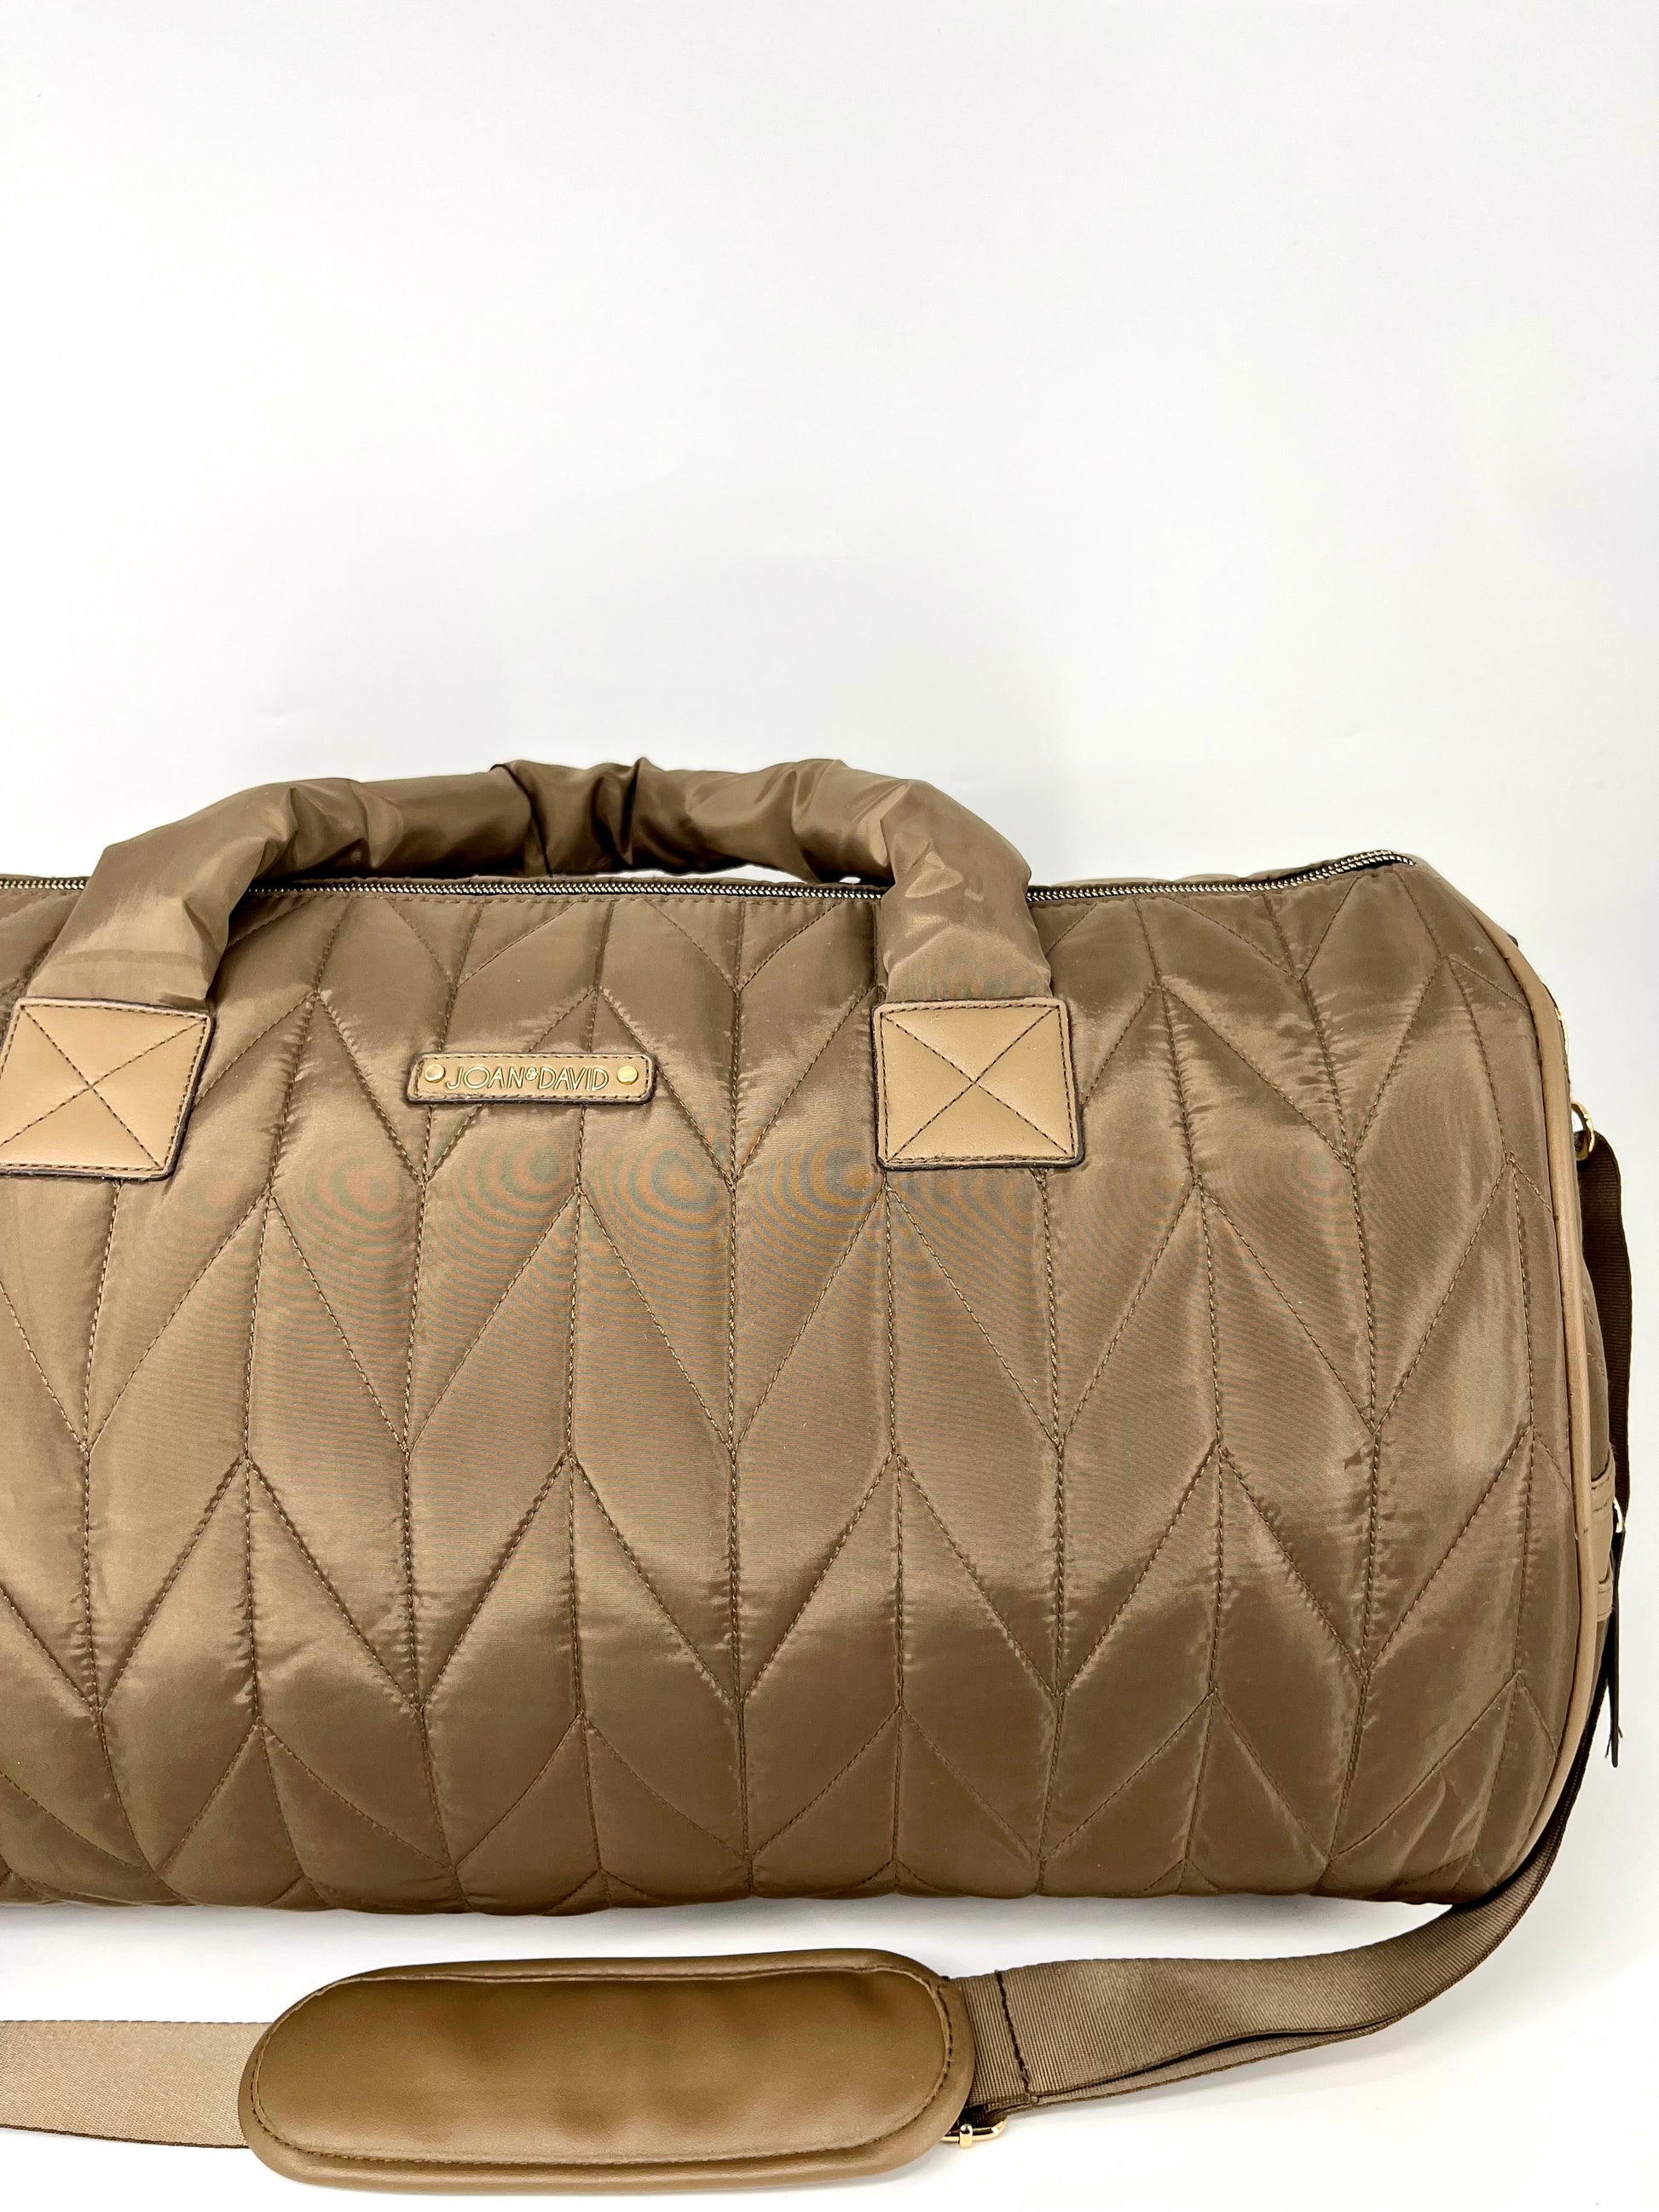 Travel Duffel Bag - Quilted Nylon Weekender Bag